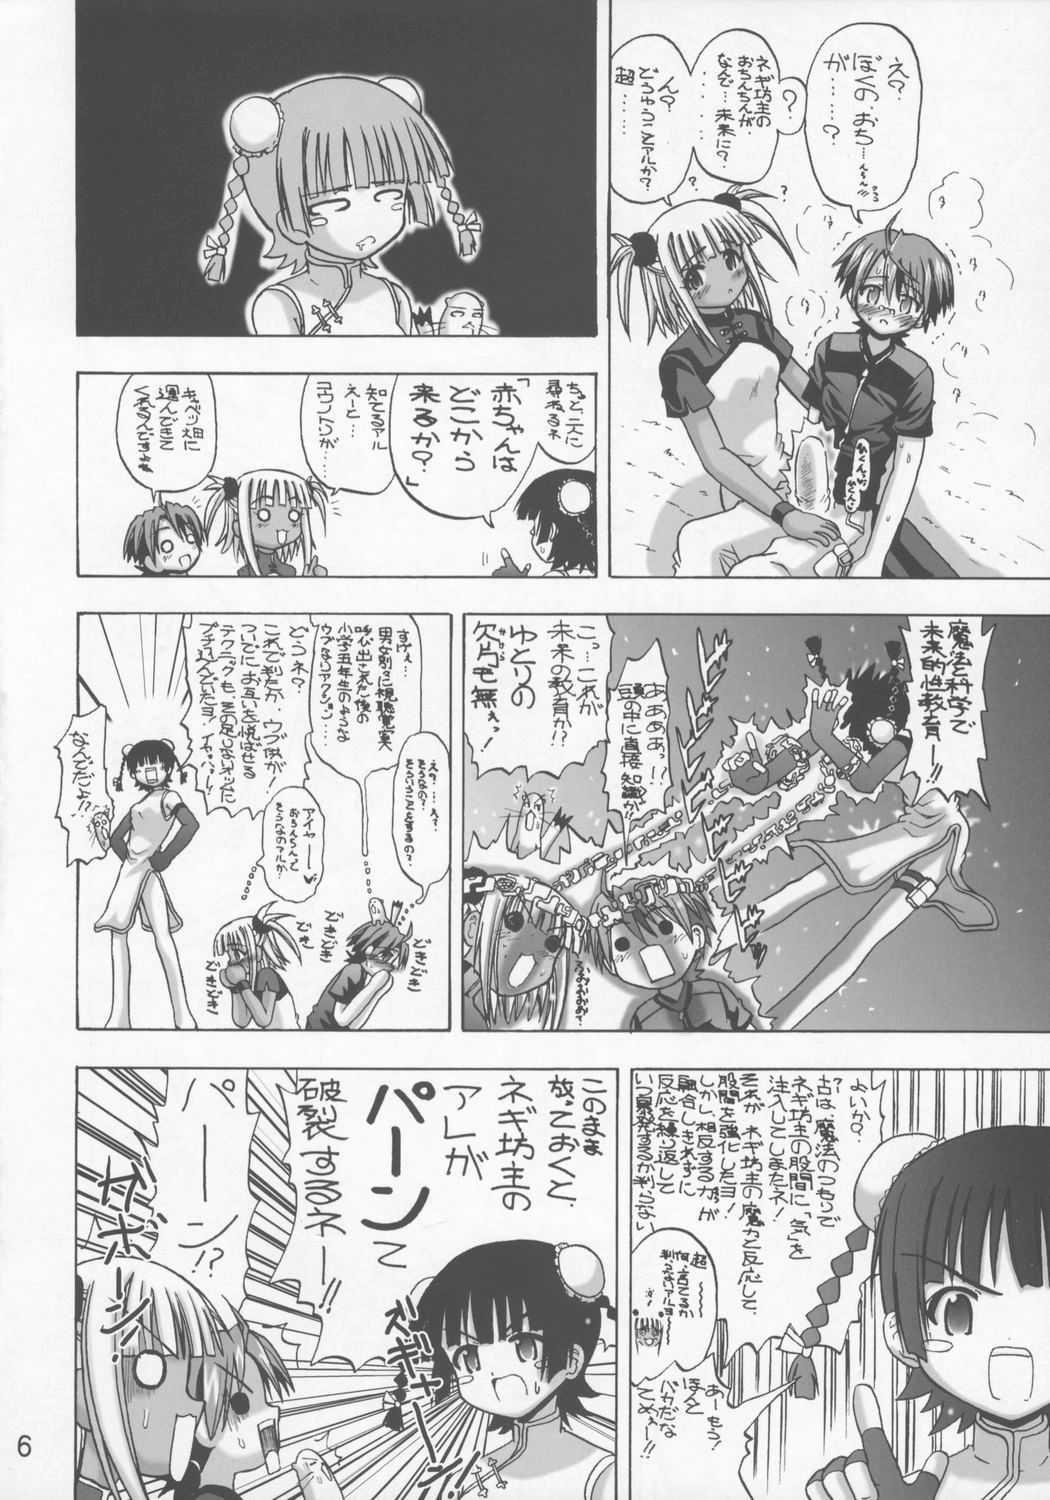 Anal Gape Ku Negi - Mahou sensei negima Girl - Page 5